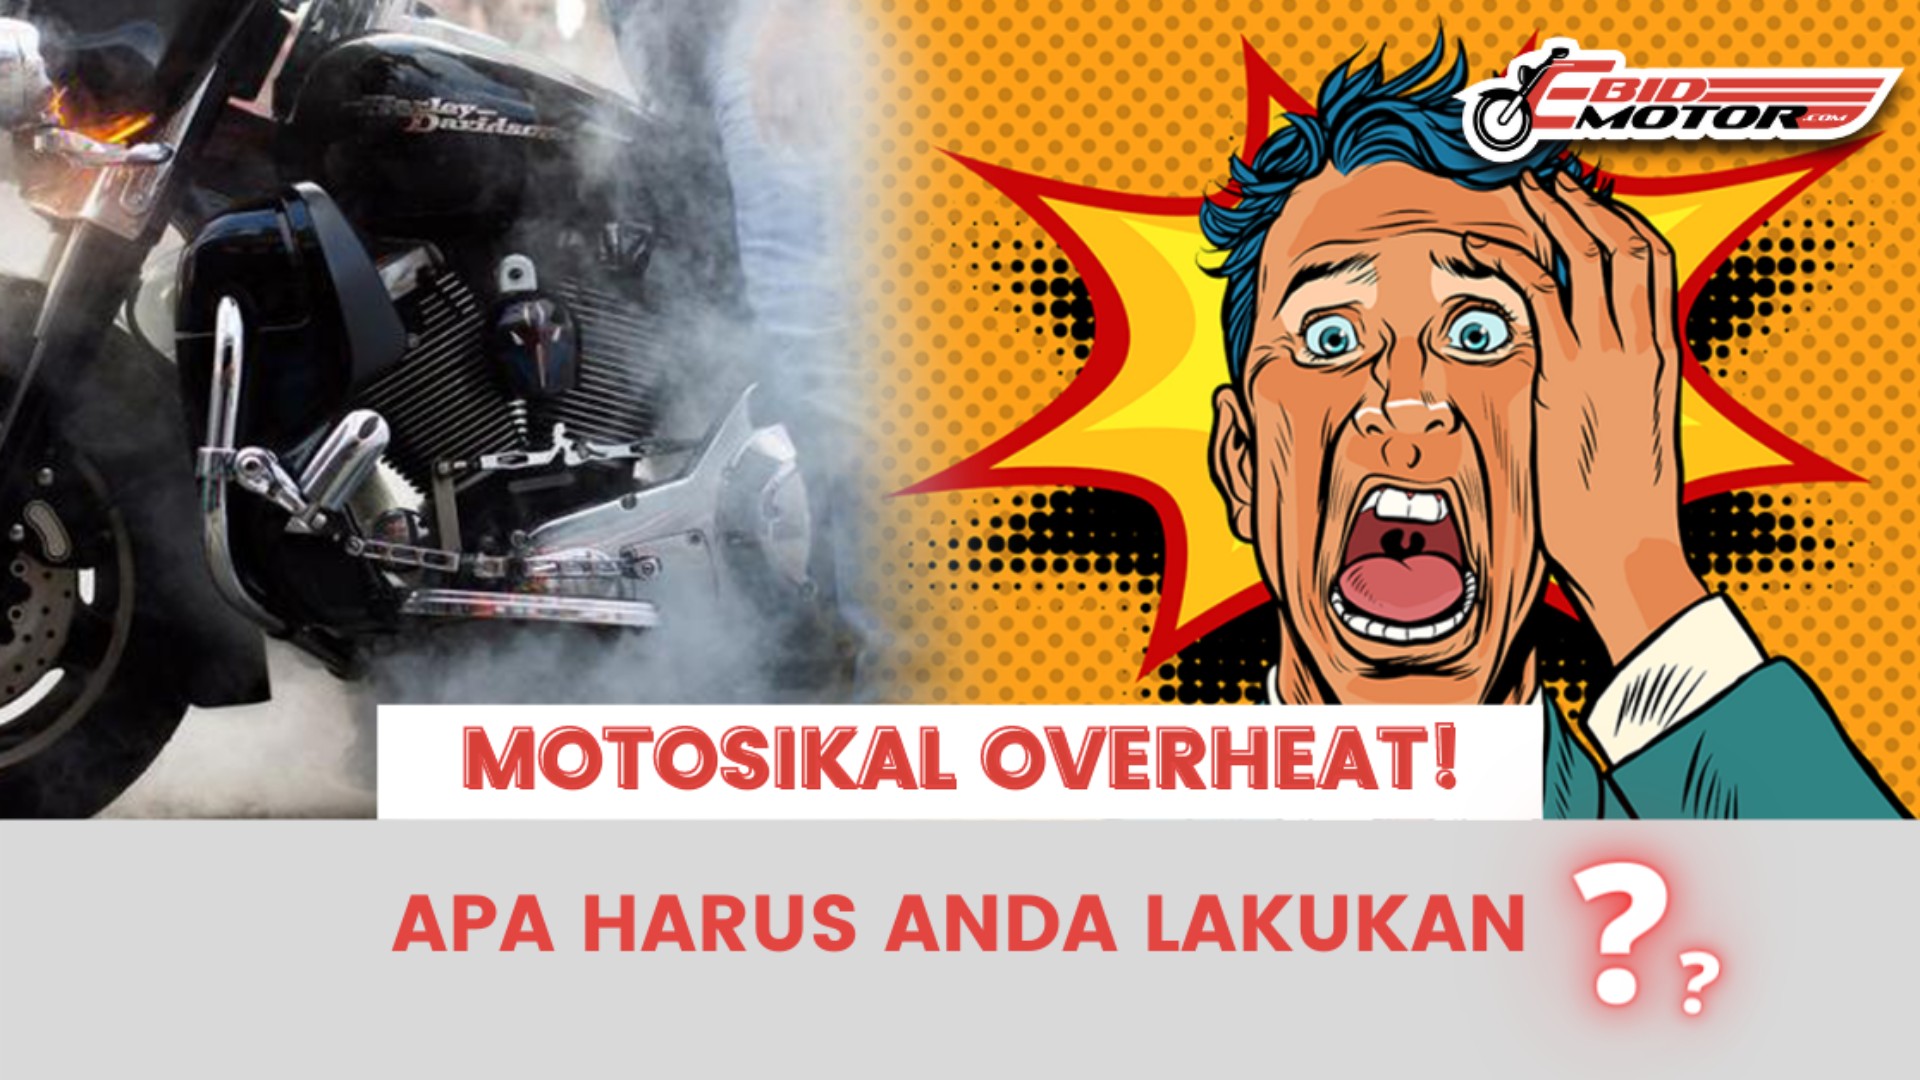 Jangan Panik Kerana Ada Cara Mengatasi Motosikal Overheat!